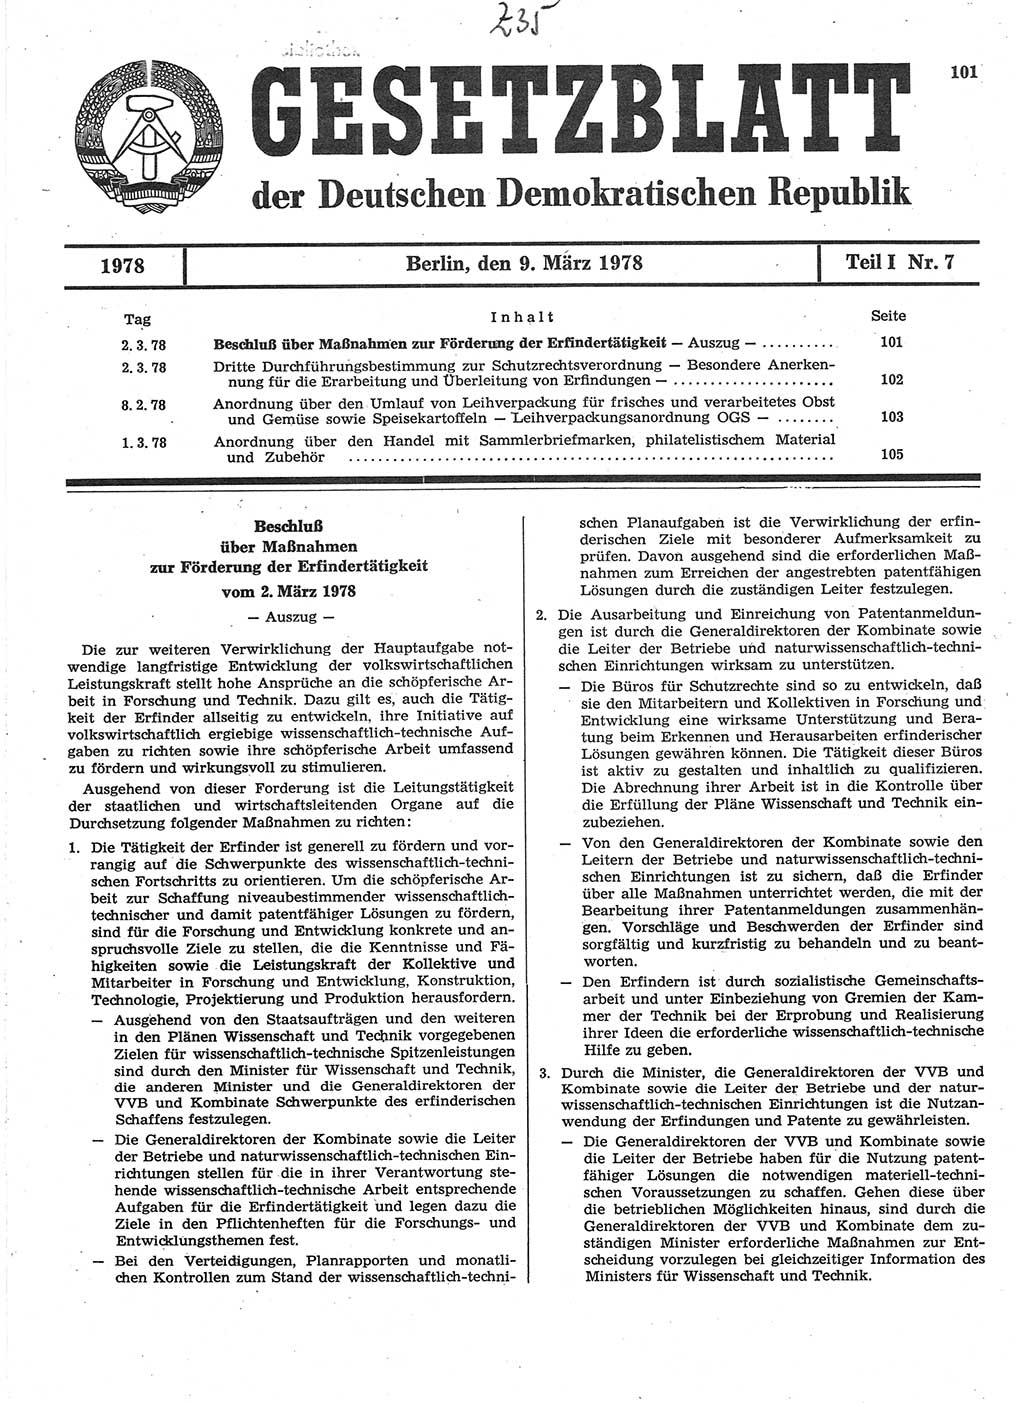 Gesetzblatt (GBl.) der Deutschen Demokratischen Republik (DDR) Teil Ⅰ 1978, Seite 101 (GBl. DDR Ⅰ 1978, S. 101)